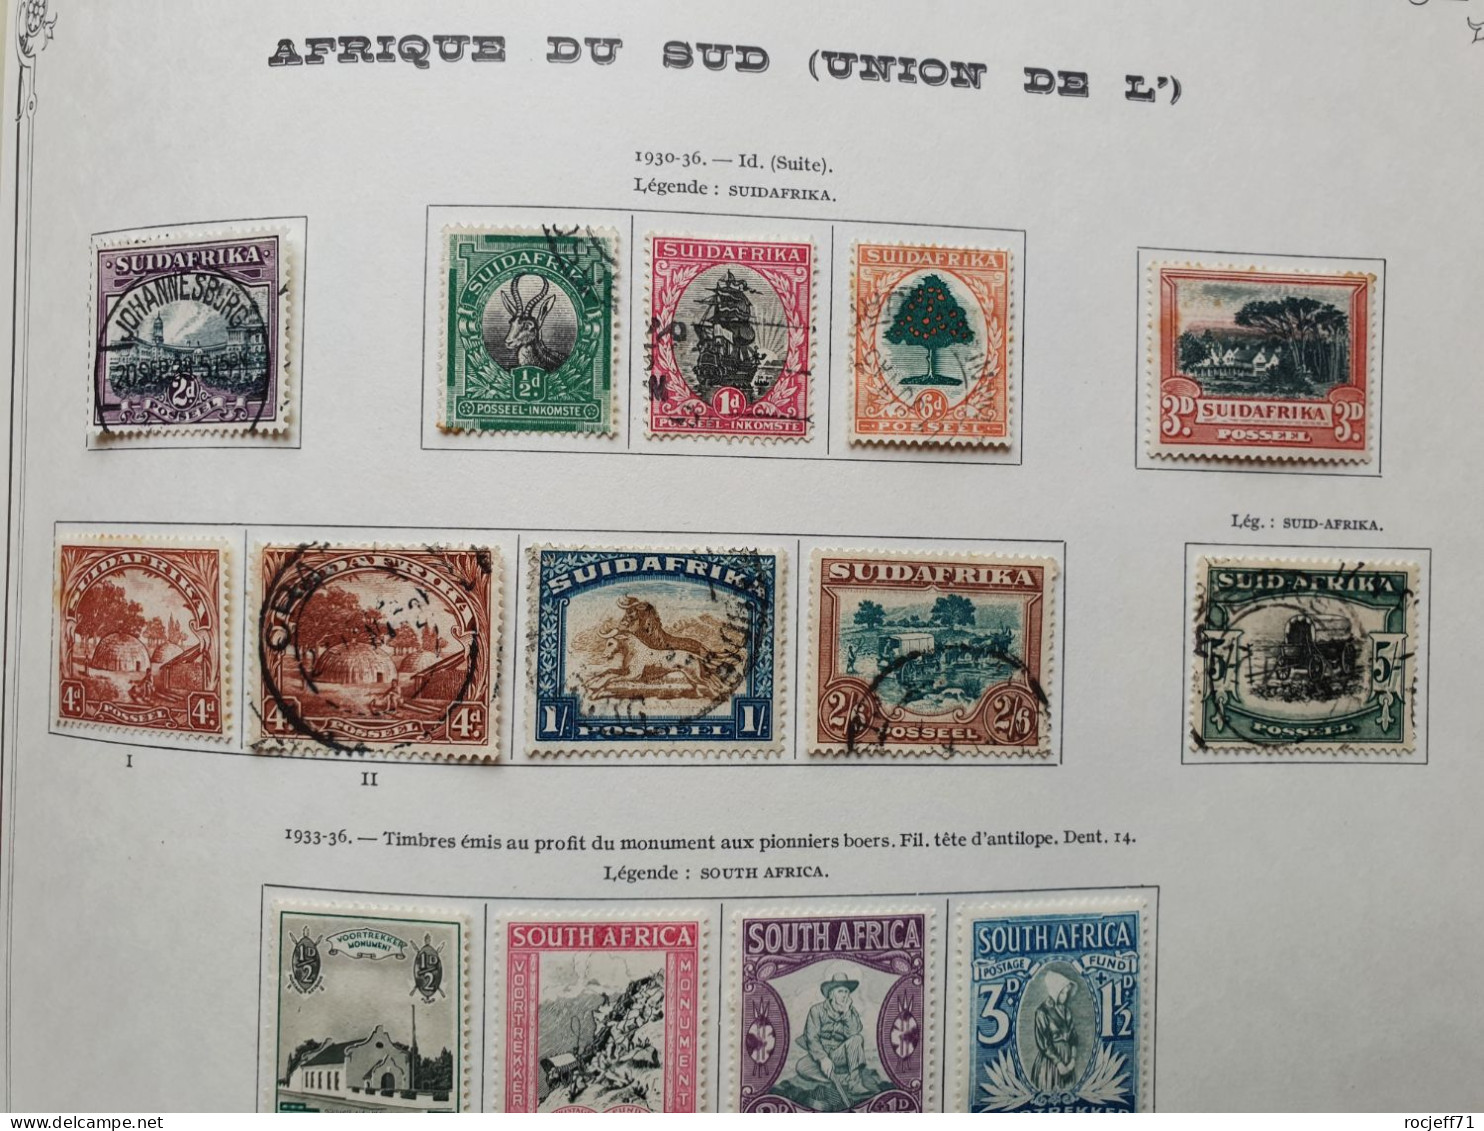 12 - 23 // Afrique du Sud - Belle collection entre 1910 et 1970 sur page d'Album - Cote environs 1150 euros  / 41 scan